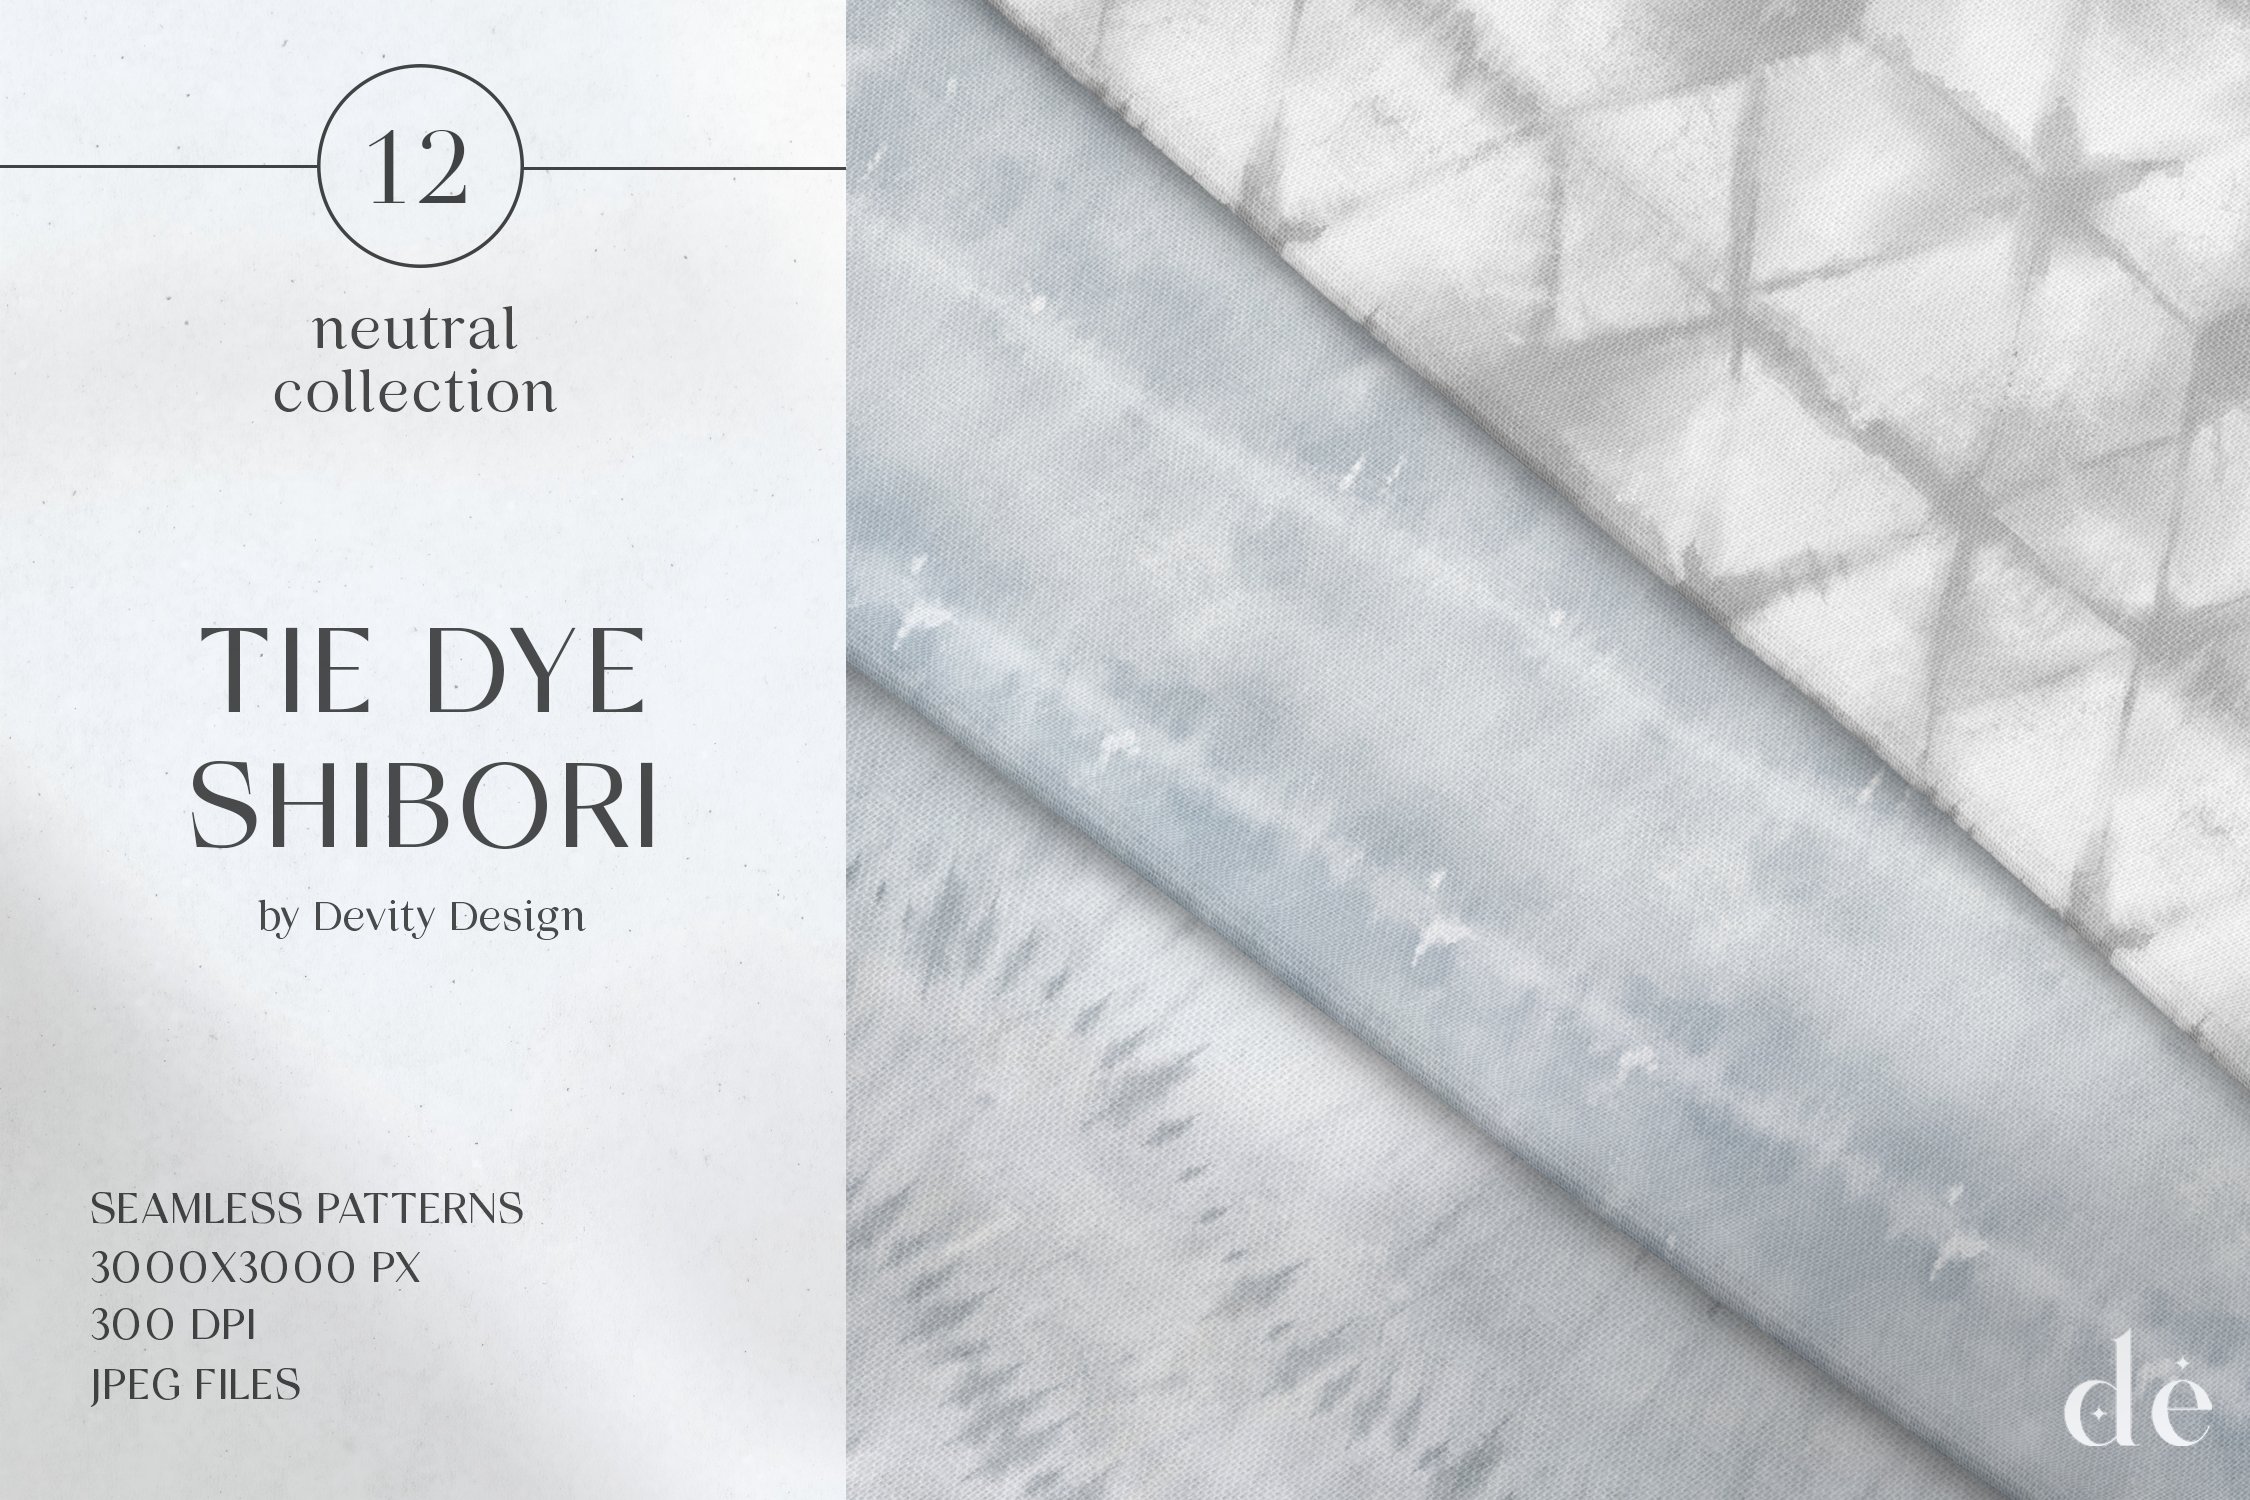 Tie Dye Shibori Neutral Patterns JPG cover image.